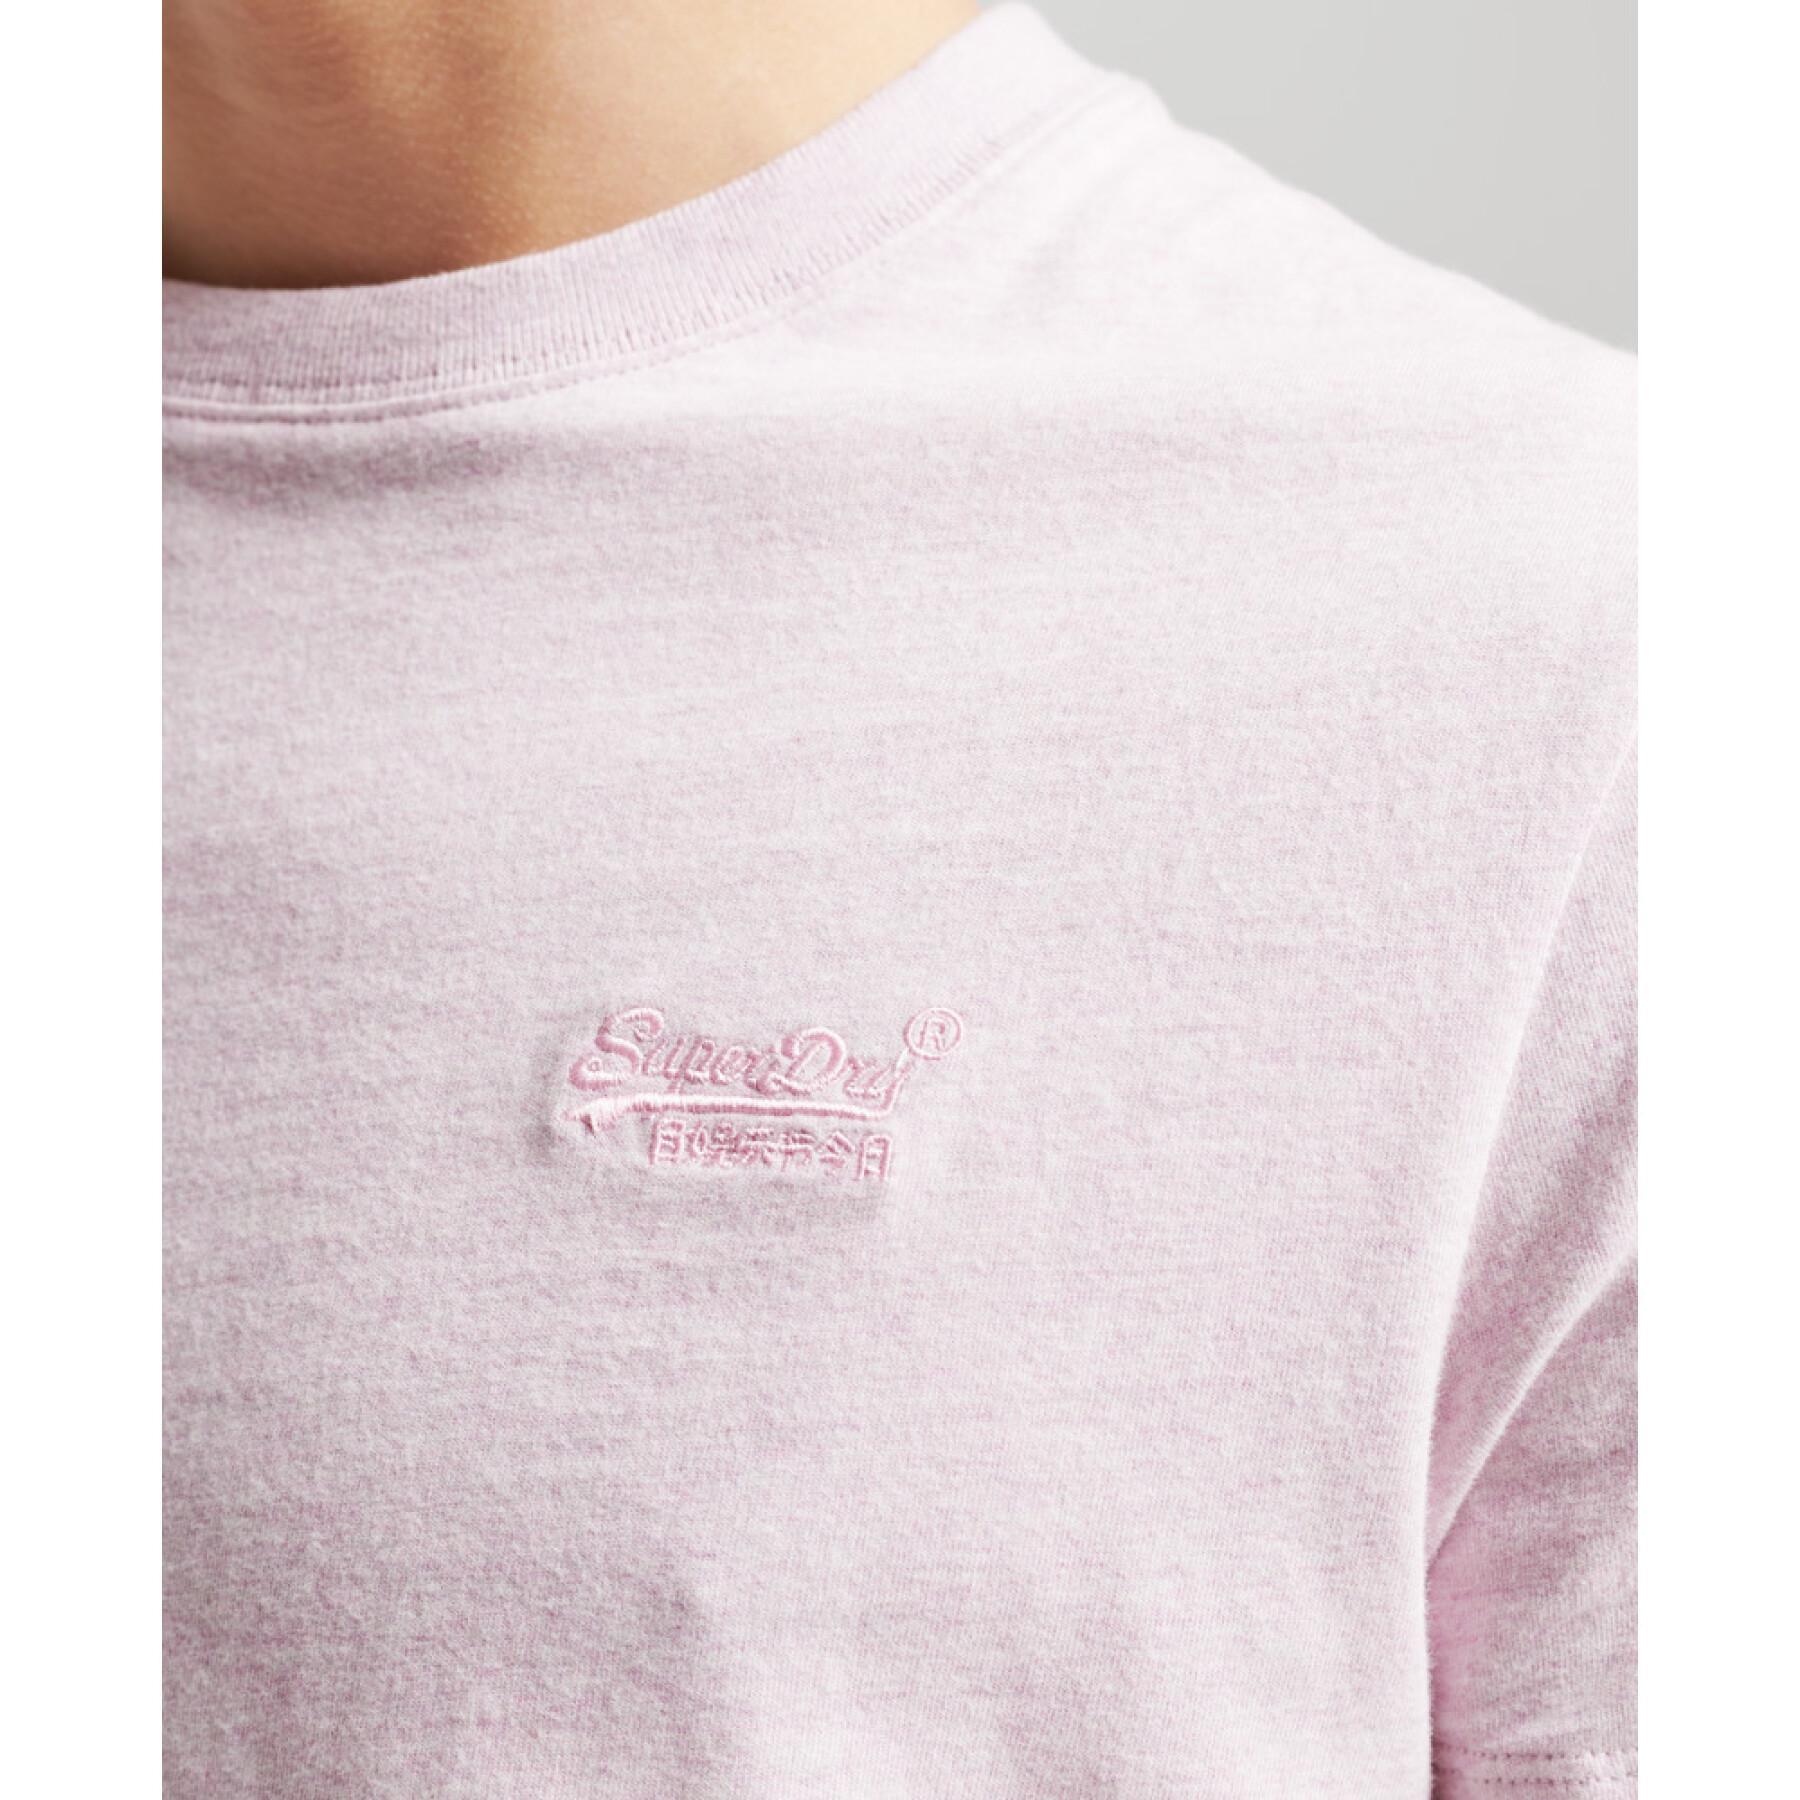 T-shirt brodé coton bio Superdry Vintage Logo